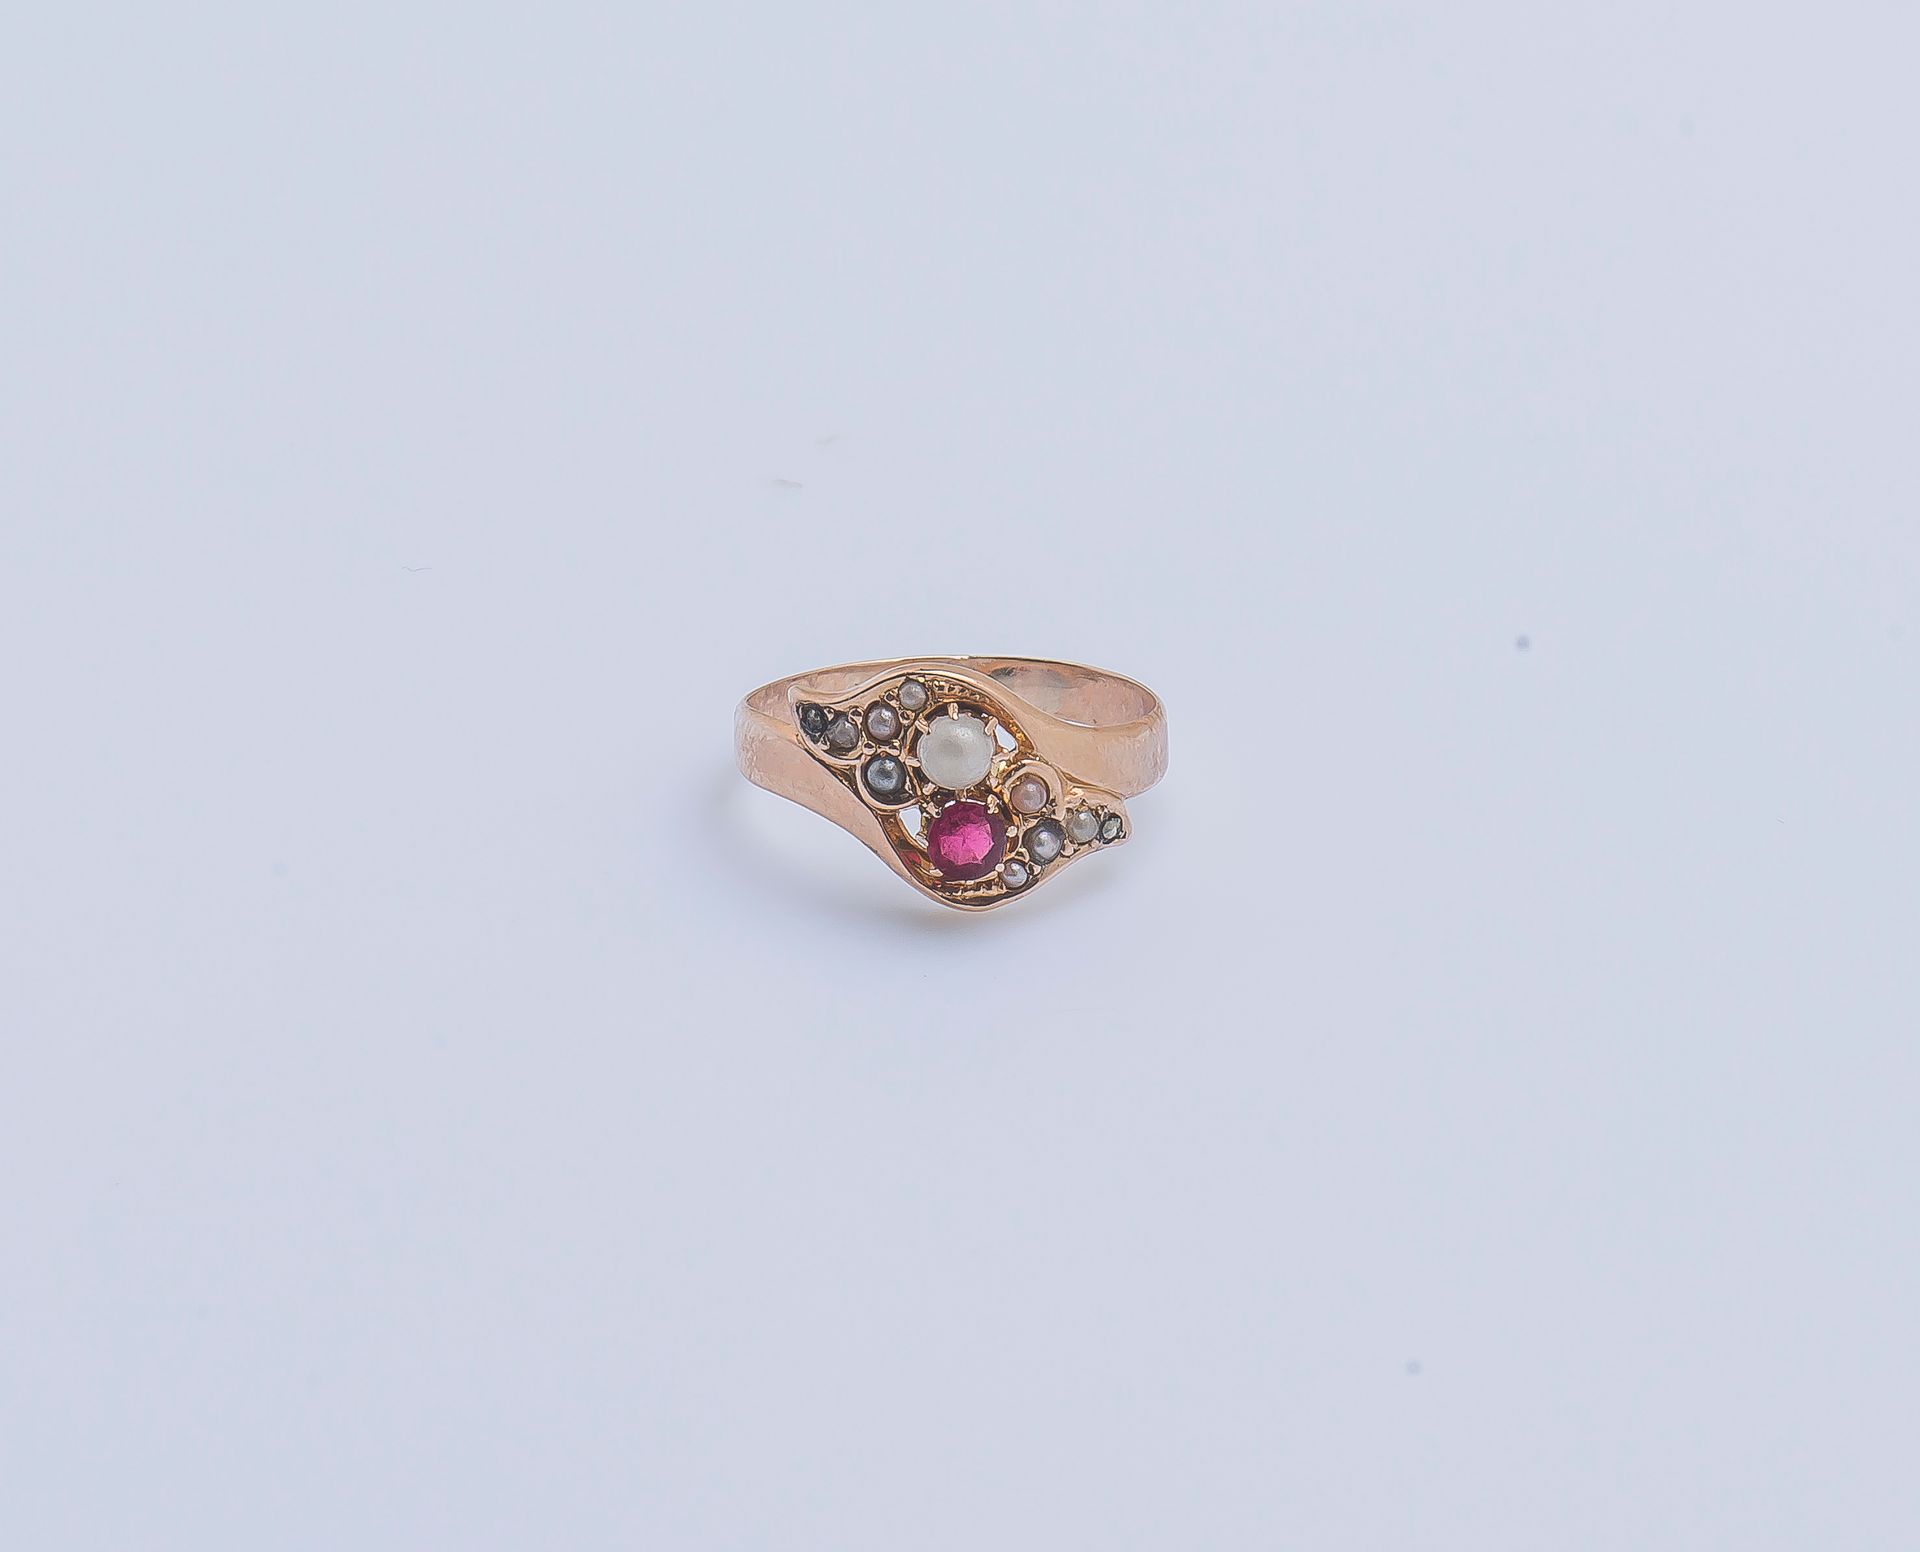 Null 一枚18K（750‰）玫瑰金带状戒指，镶嵌有花式半珍珠和红宝石，肩部有两朵镶嵌珍珠种子的百合花图案。法国作品，南希1838-1892。

手指大小：5&hellip;